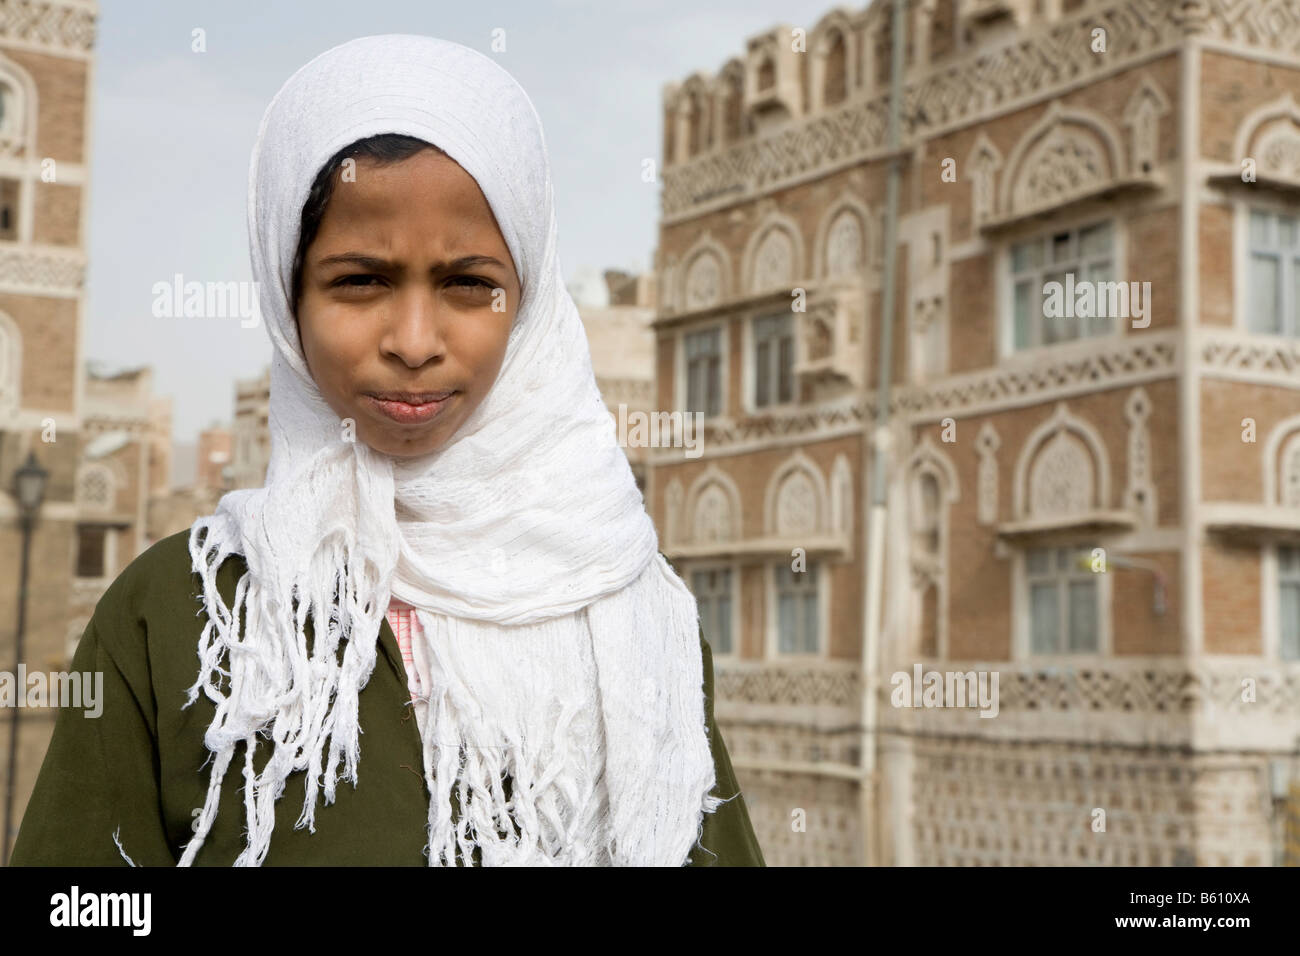 Girl between 10 and 15 years old, Sana, Yemen, Middle East Stock Photo